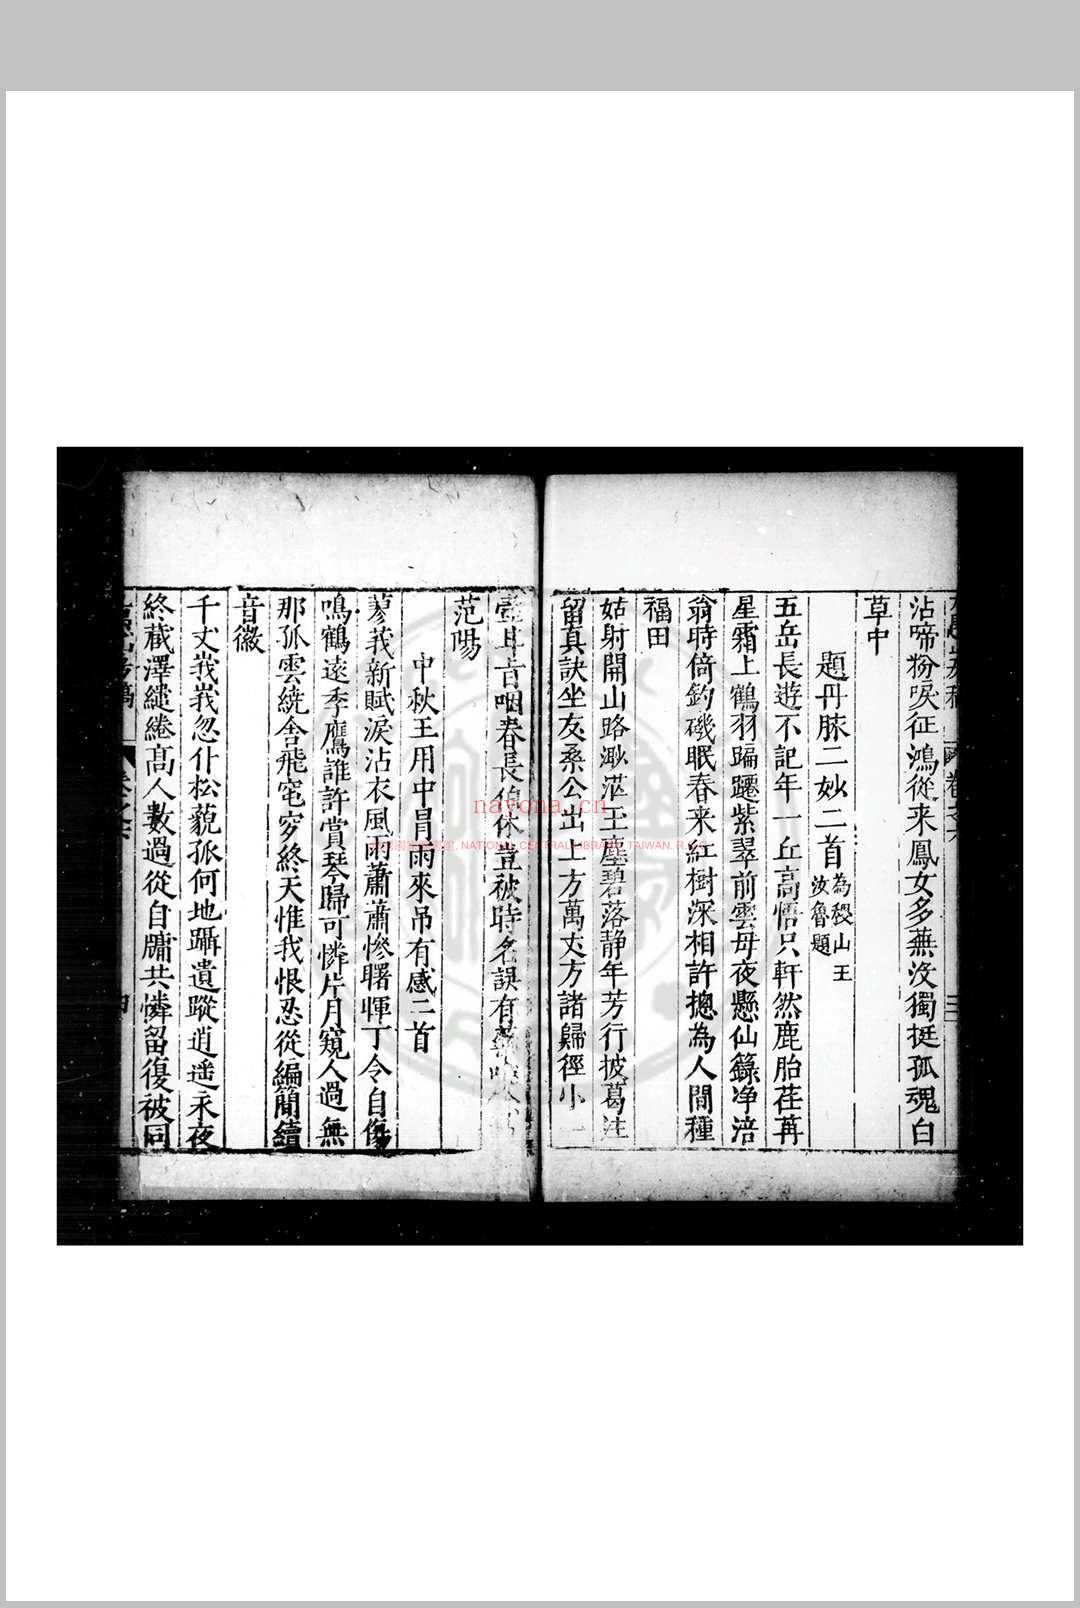 九愚山房诗集 (明)何东序撰 明万历间(1573-1620)刊清乾隆间印本